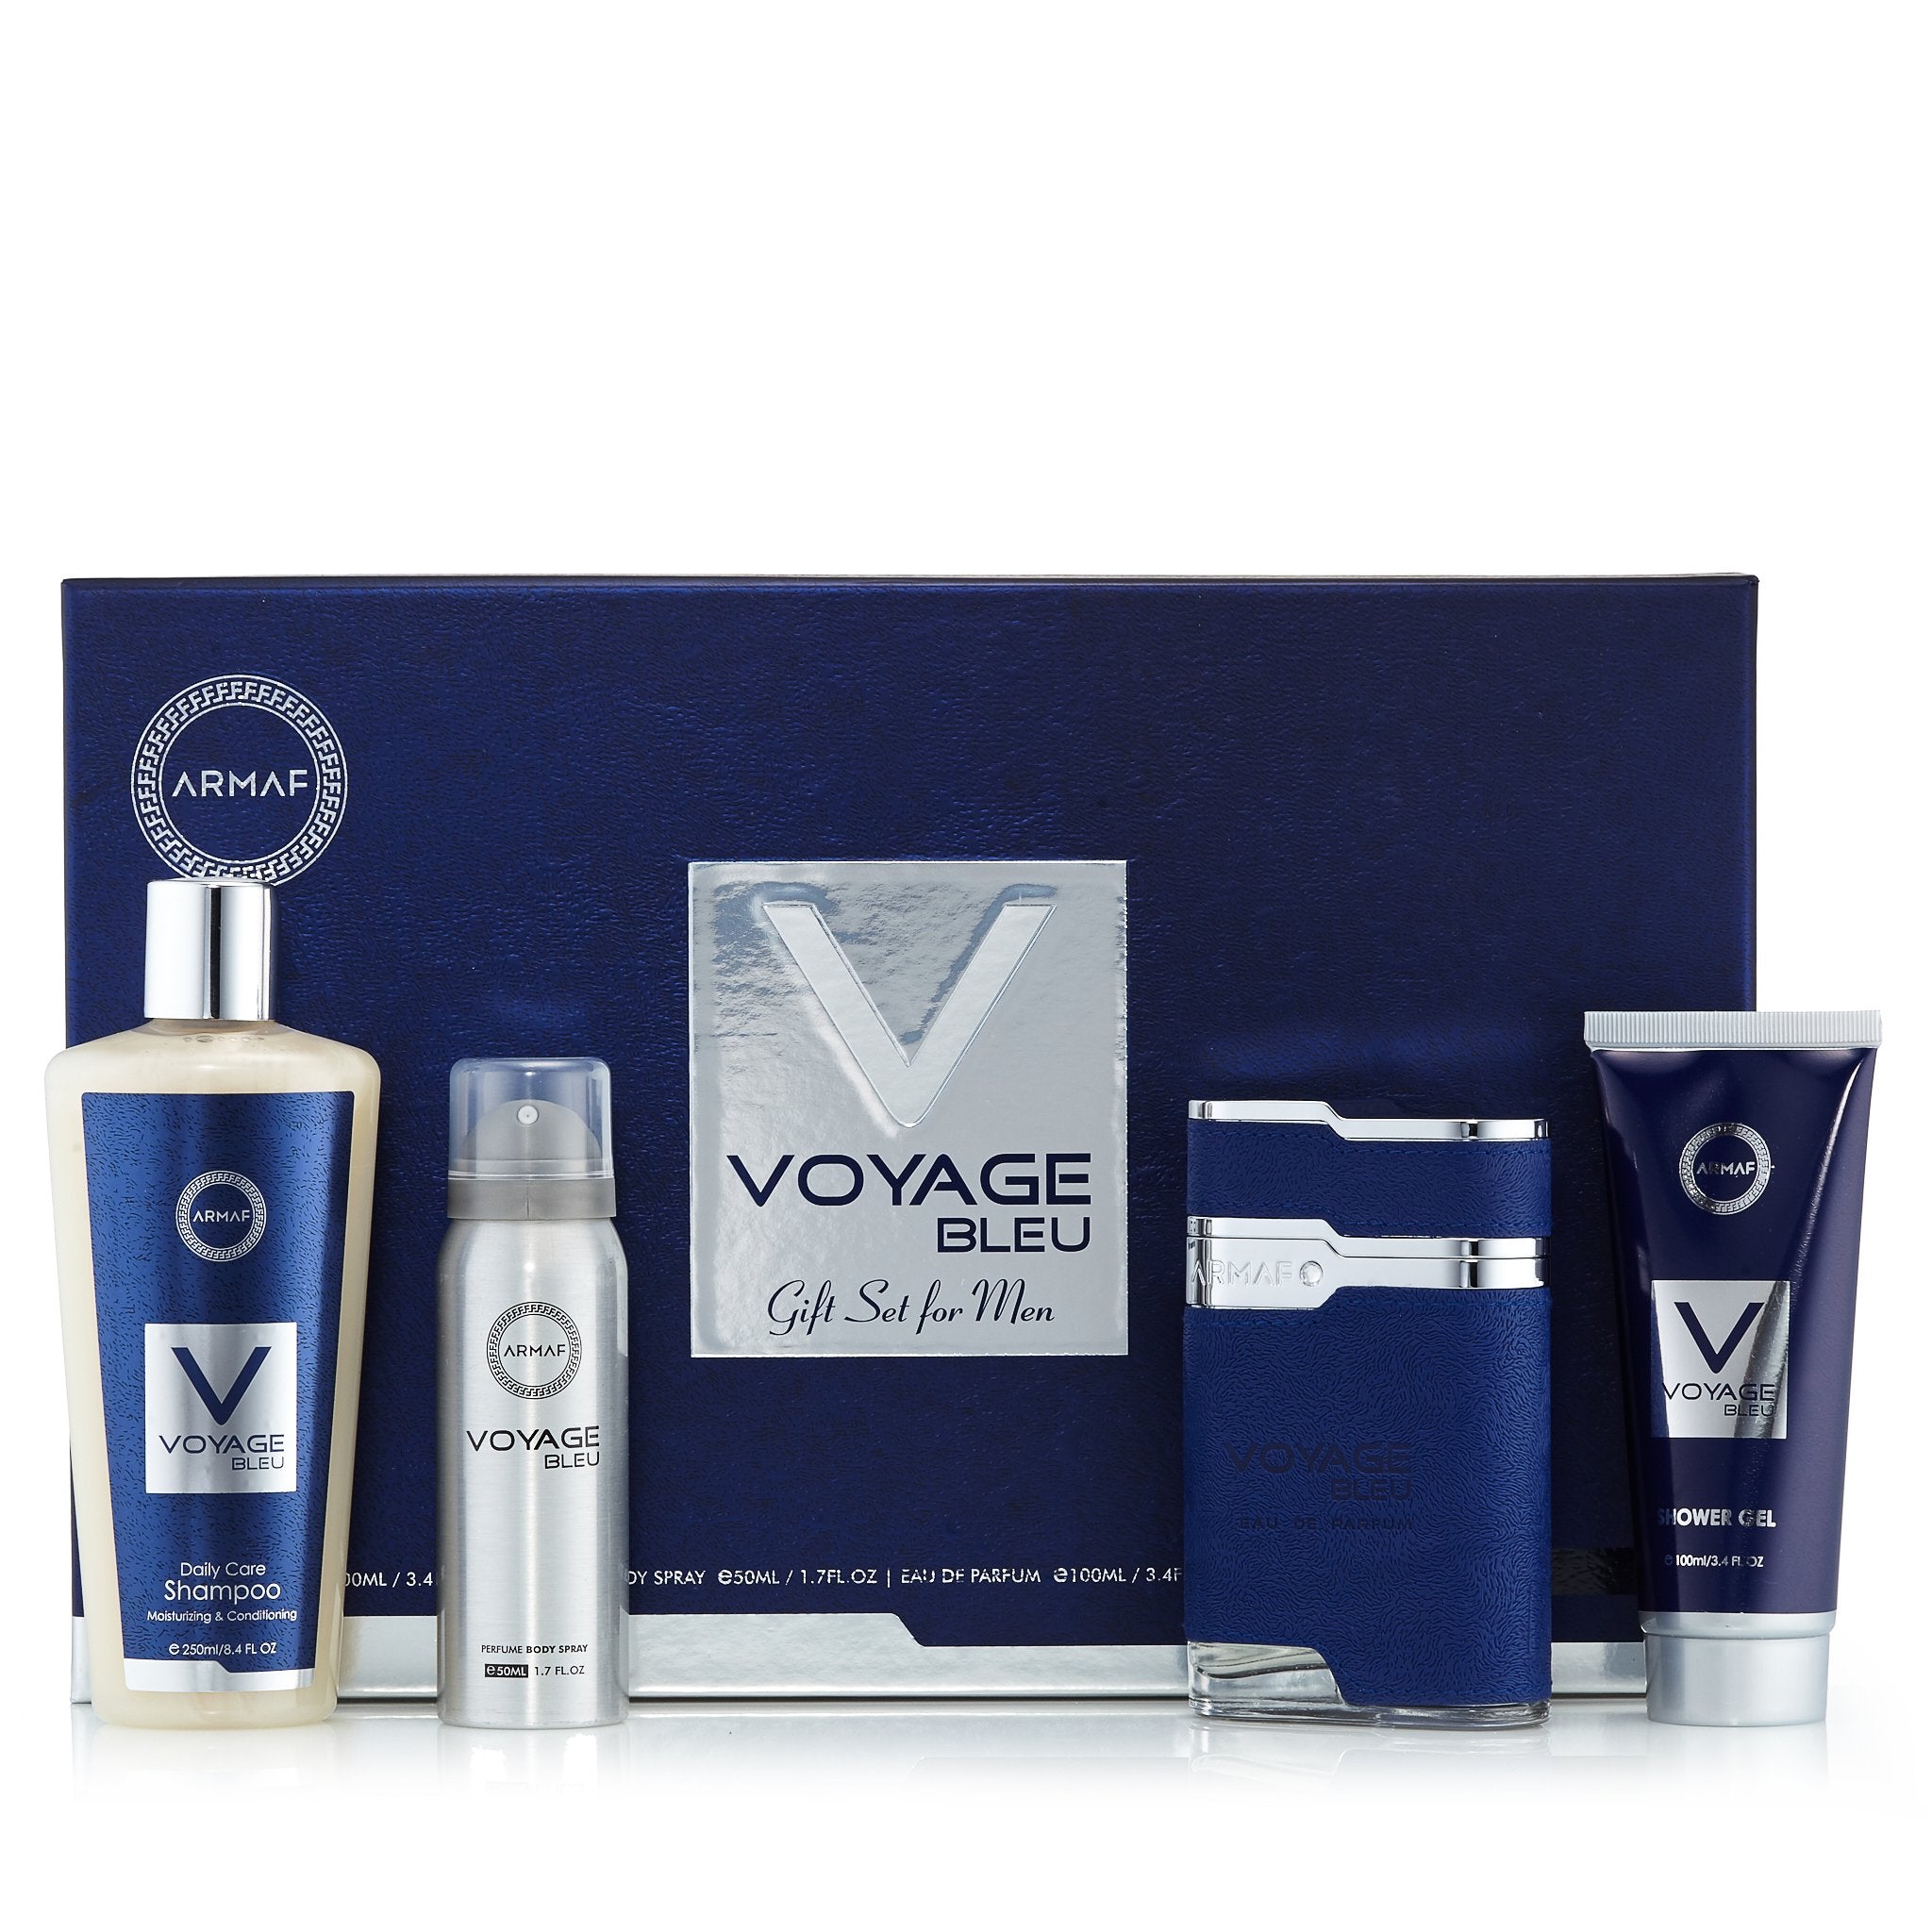 Voyage Bleu Gift Set for Men